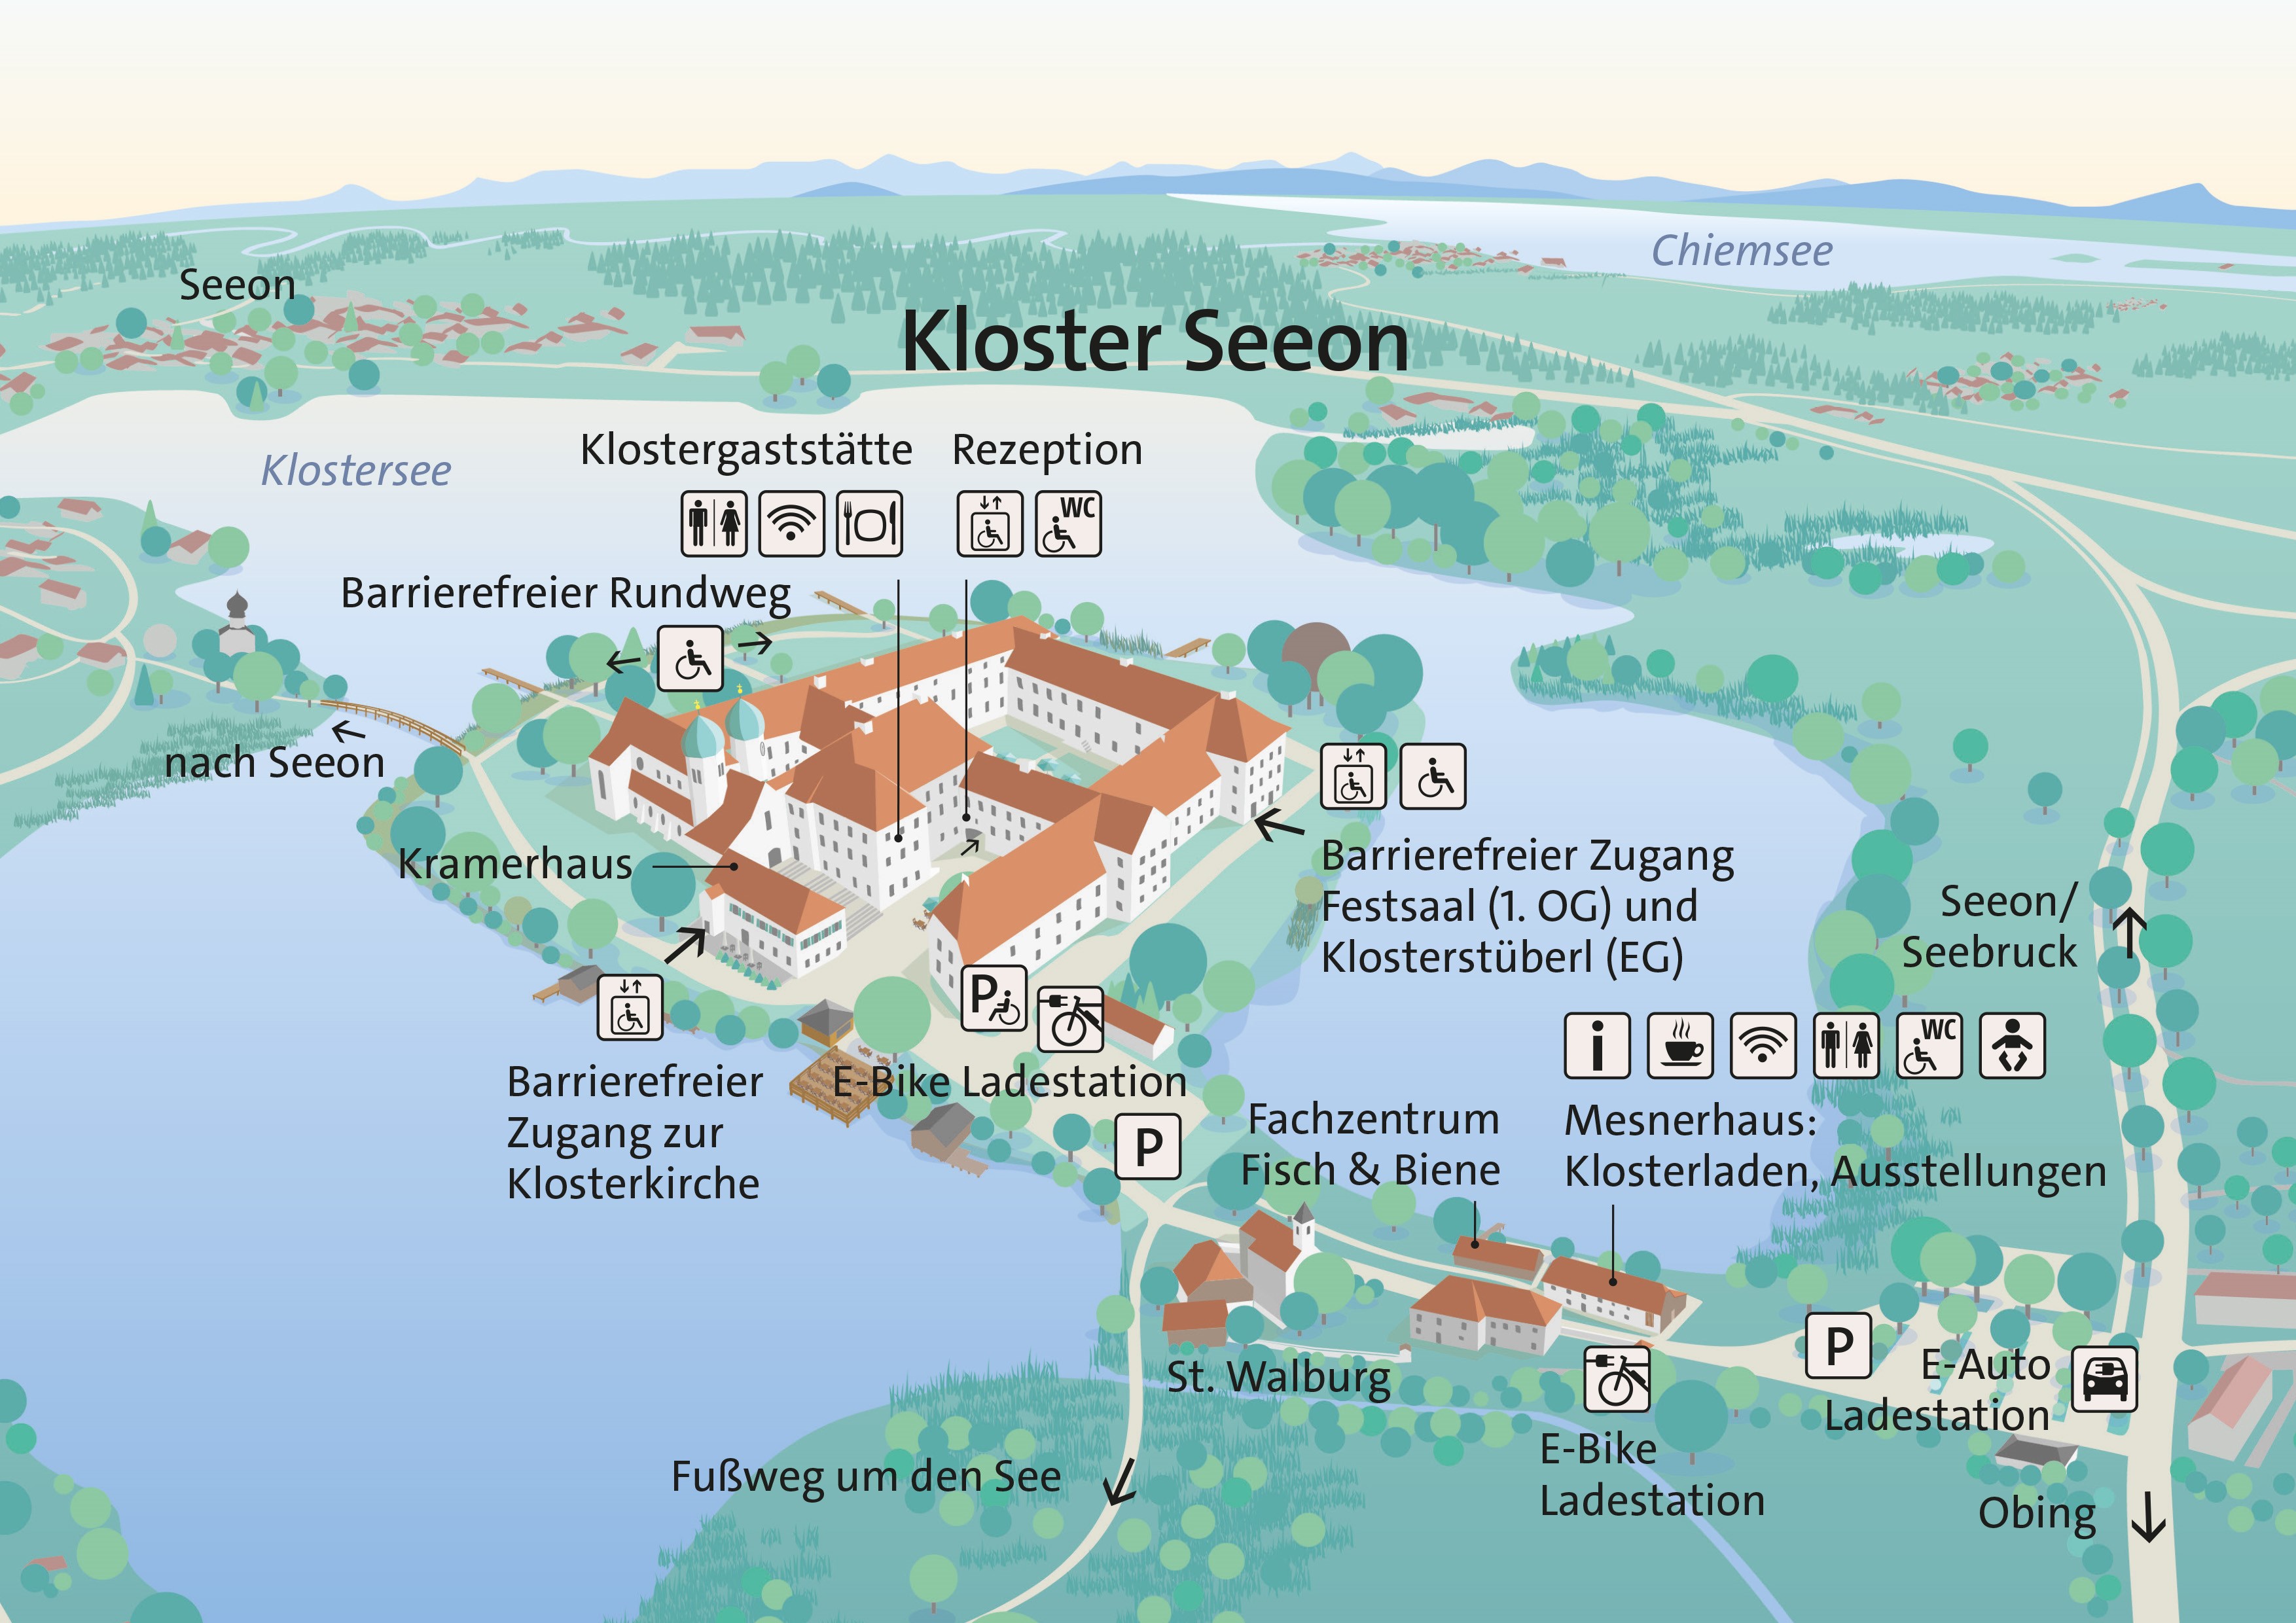 Virtueller Inselplan mit Kloster Seeon und allen wichtigen Informationen zu Infrastruktur und Barrierefreiheit